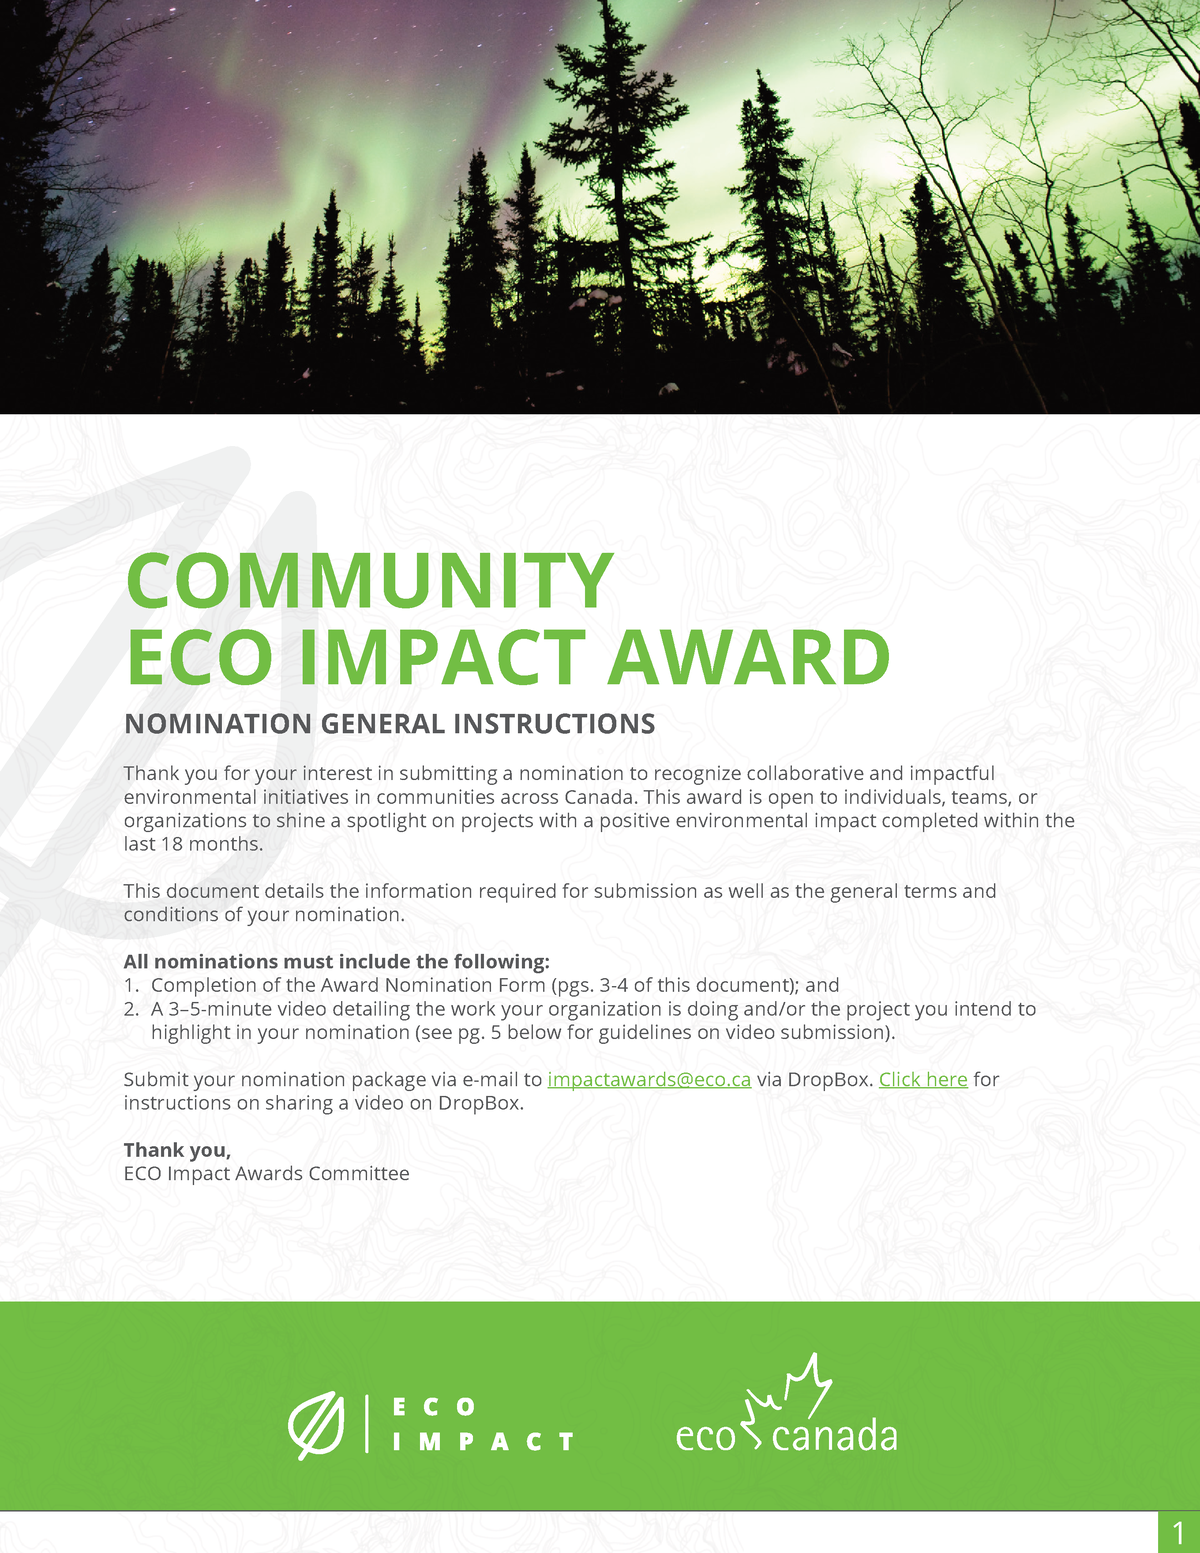 Community Impact Nomination Form 2 Community Eco Impact Award Nomination General Instructions